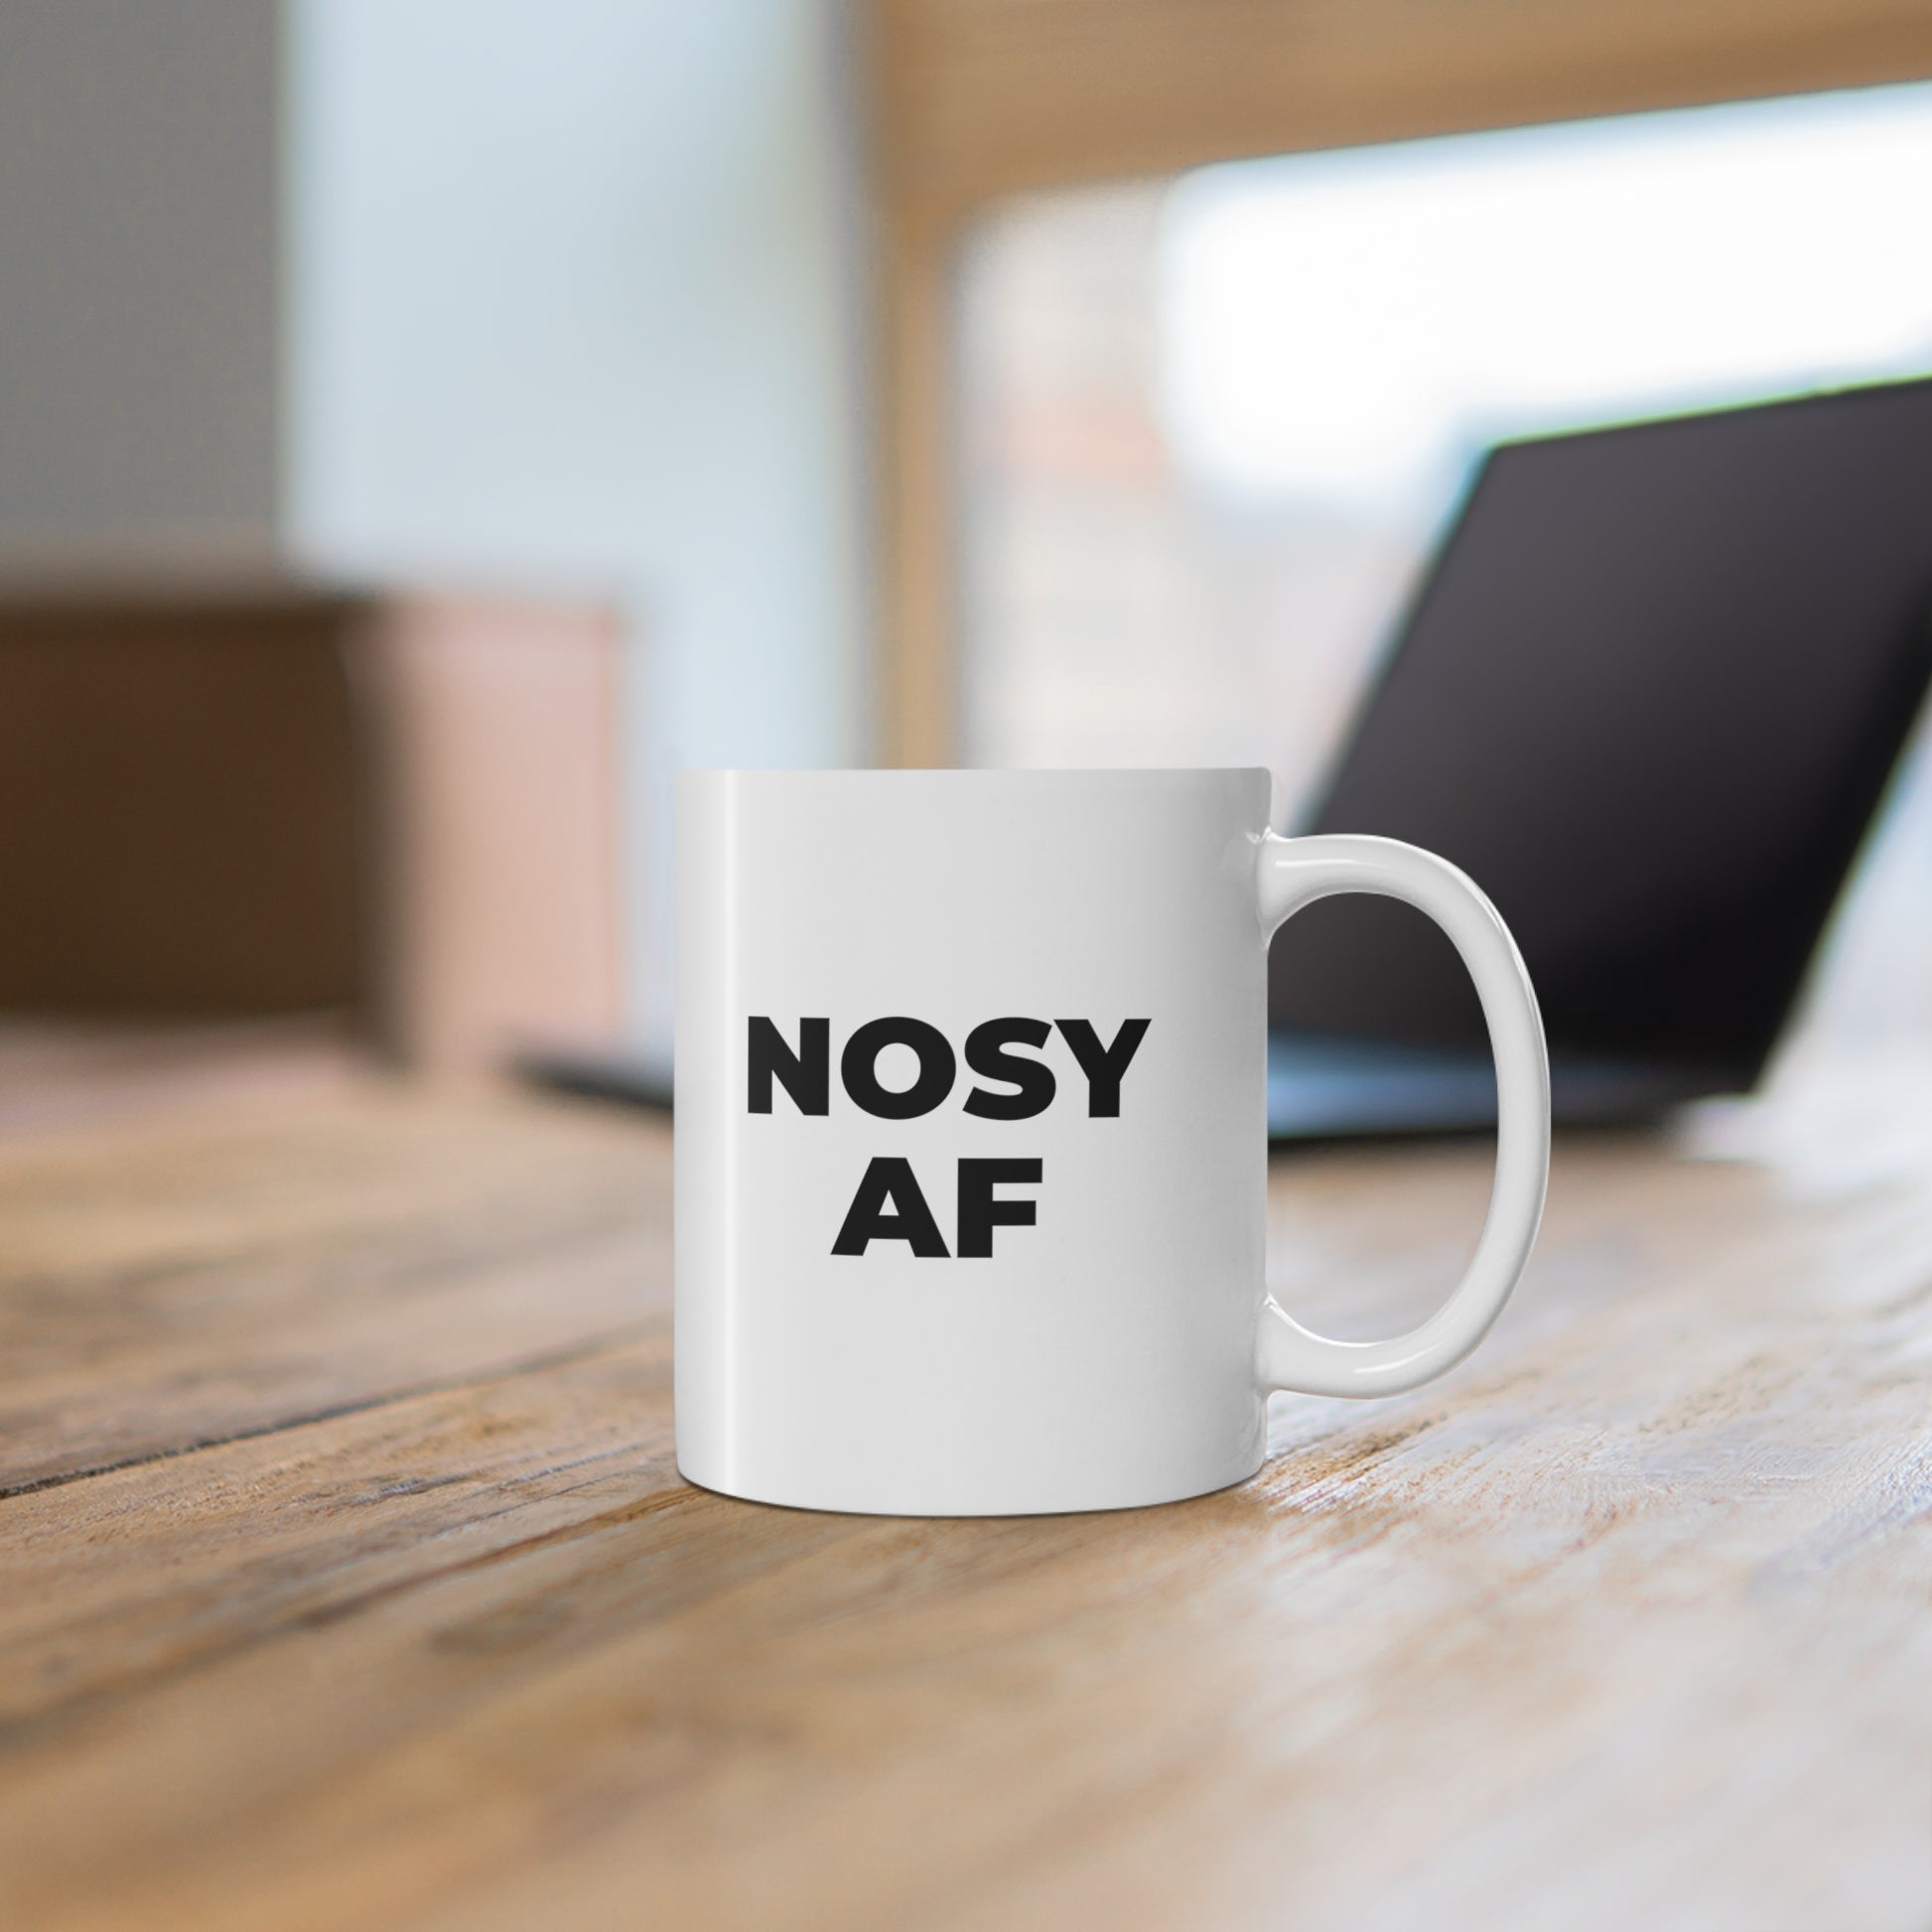 11oz ceramic mug with quote Nosy AF